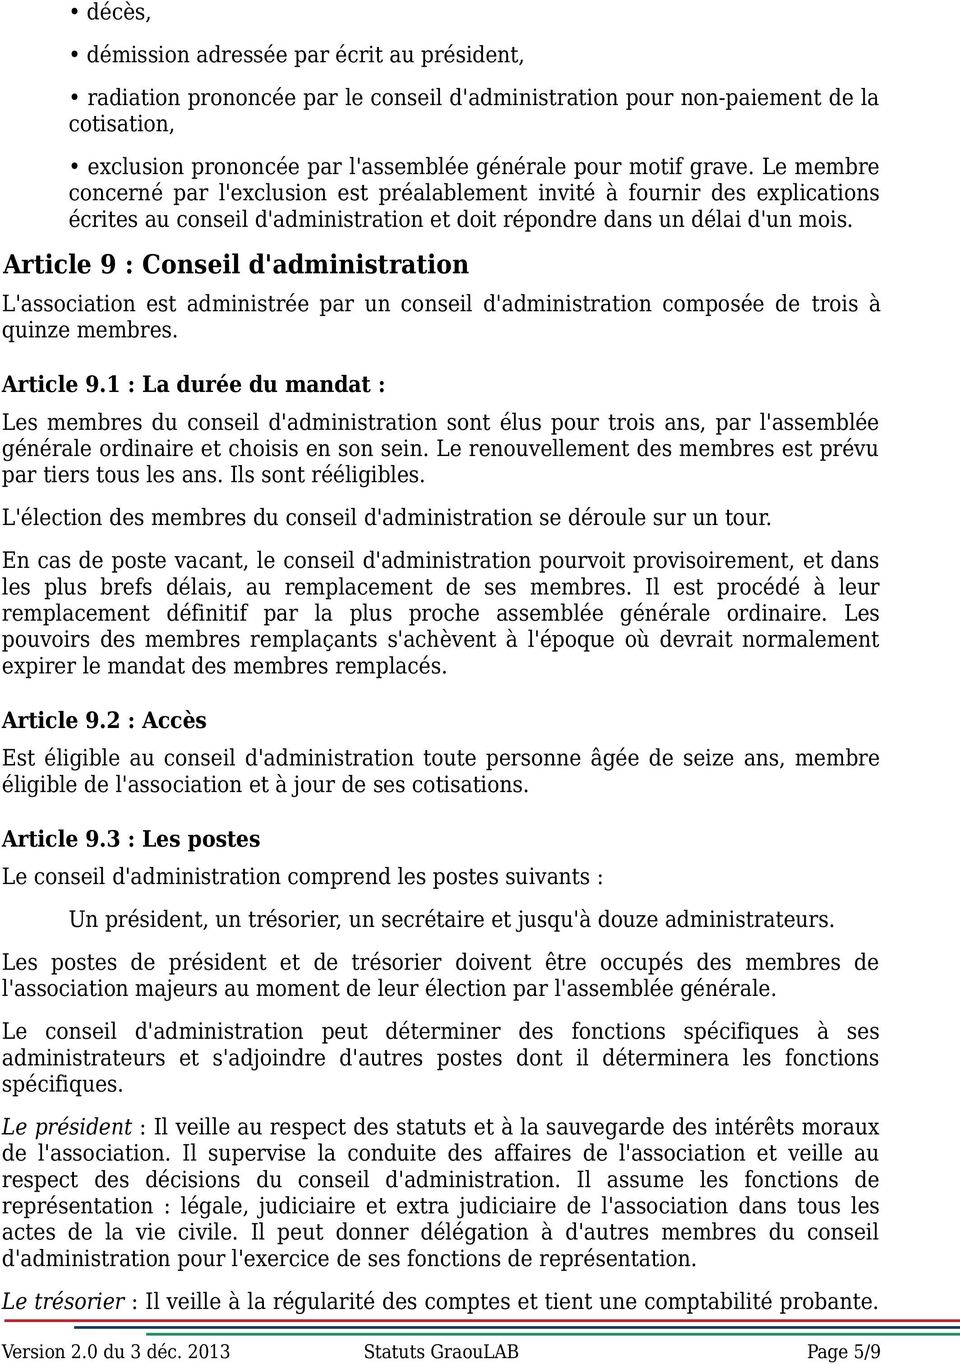 Article 9 : Conseil d'administration L'association est administrée par un conseil d'administration composée de trois à quinze membres. Article 9.